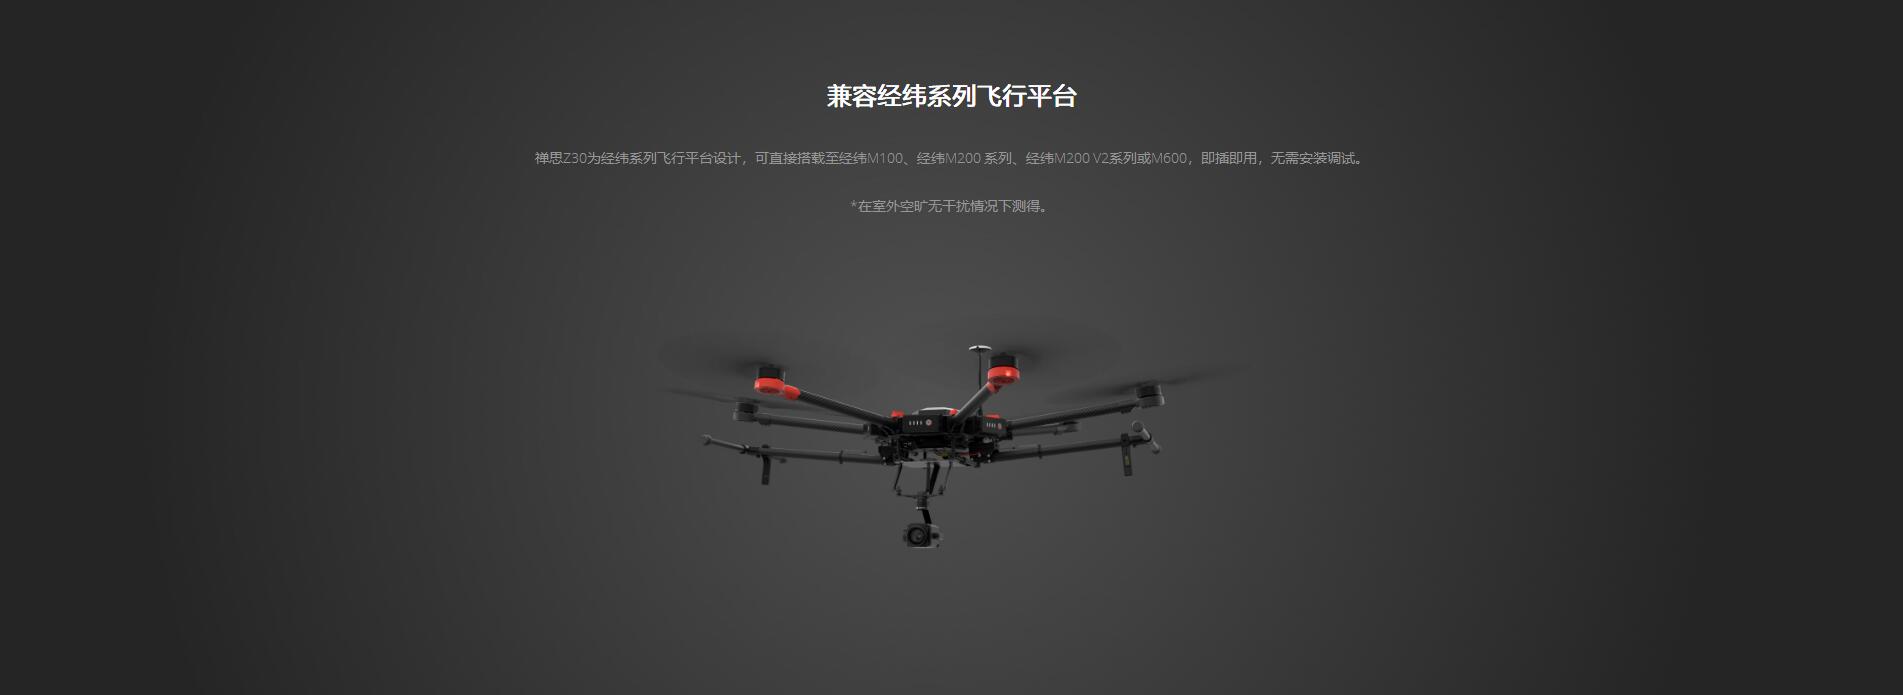 bf88官方网站禅思Z30兼容经纬系列飞行平台